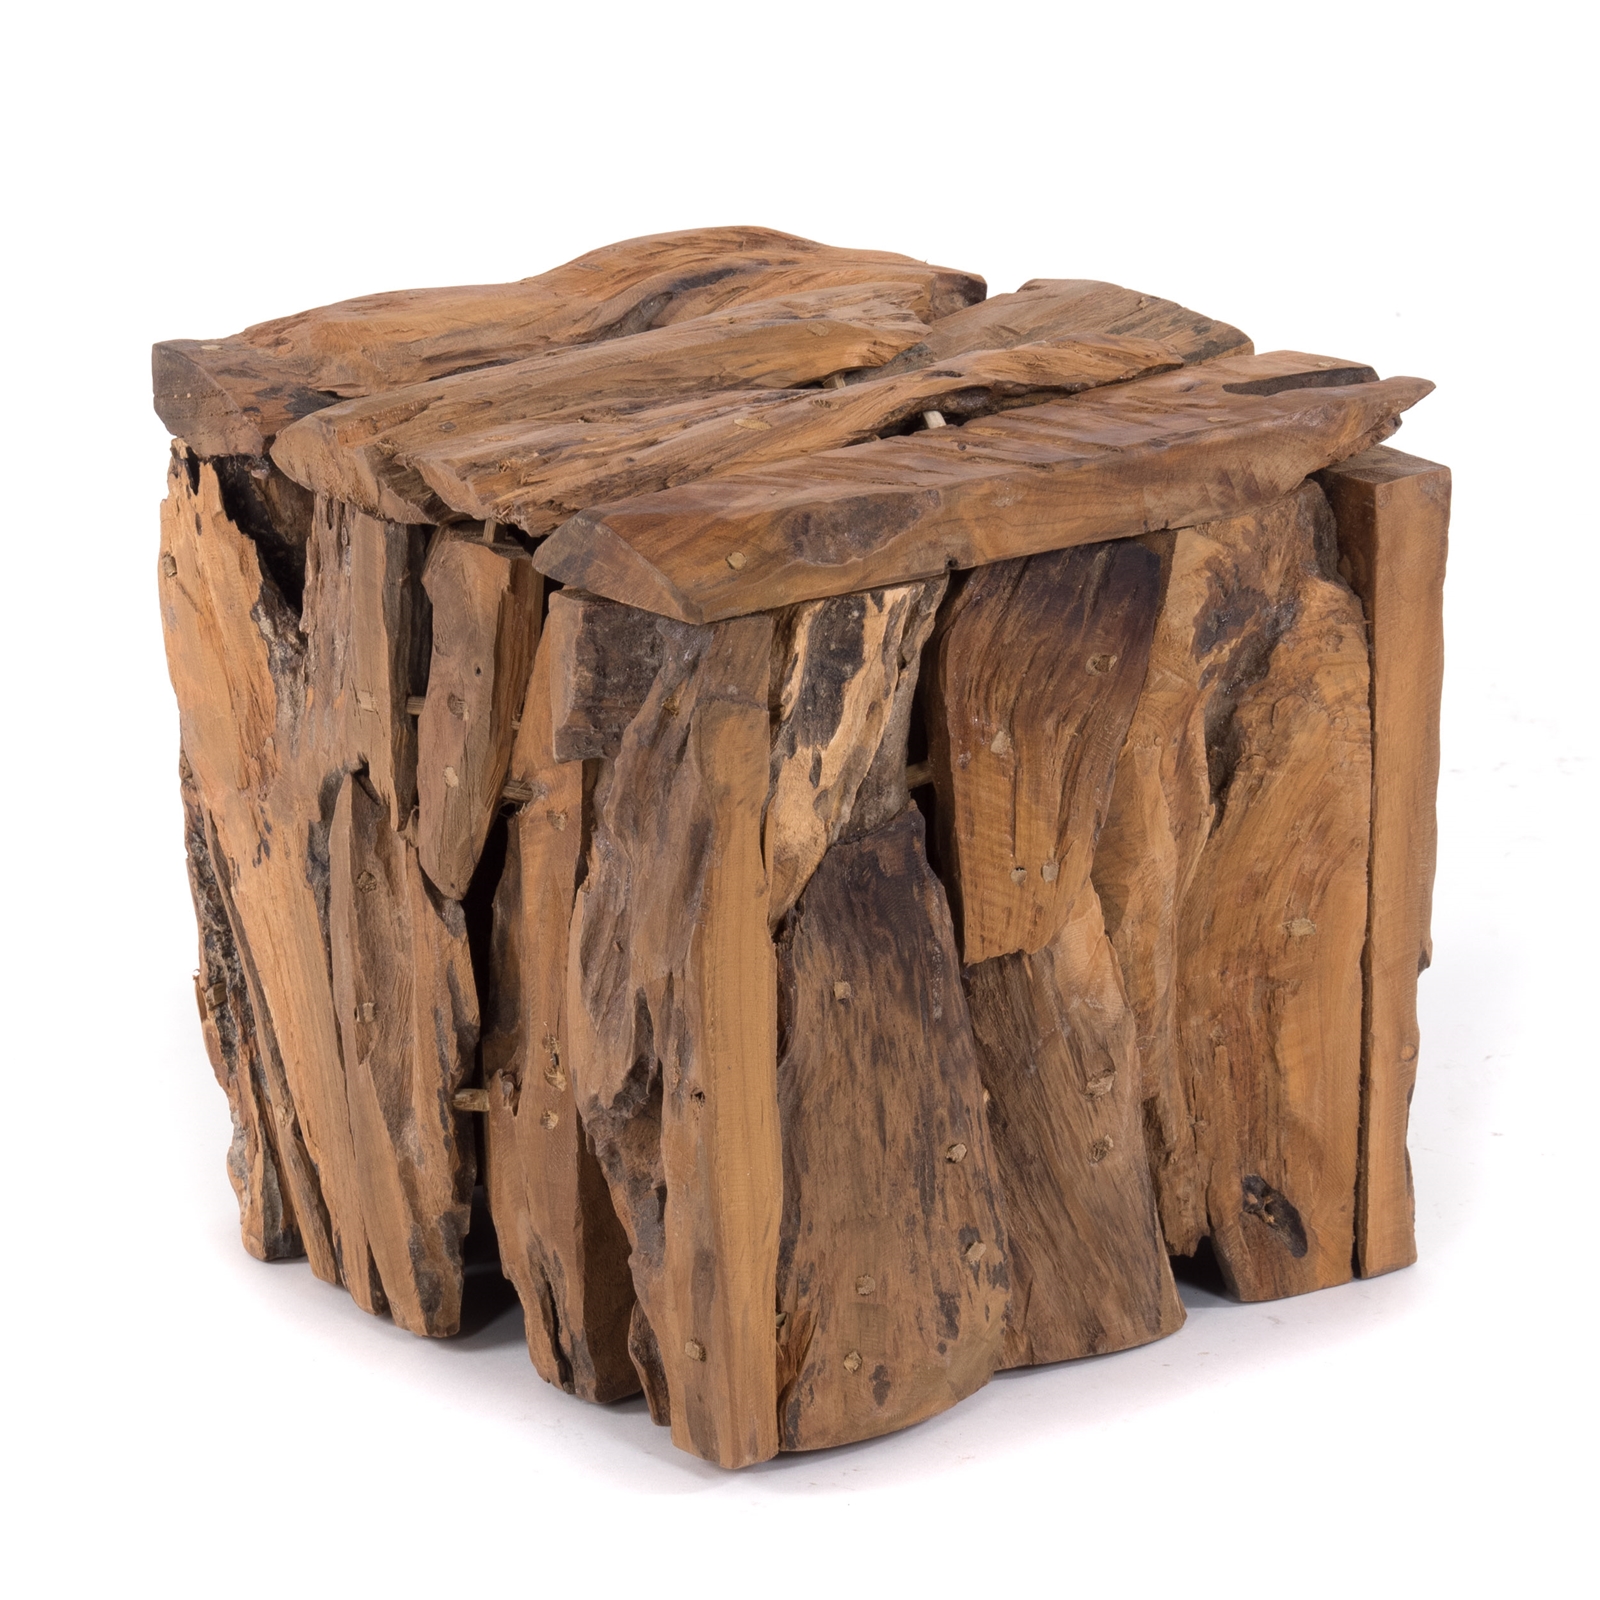 TREIBHOLZ SITZBOX "TEAK 30" | 30x30x30 cm, Recyclingholz | rustikaler Holzhocker